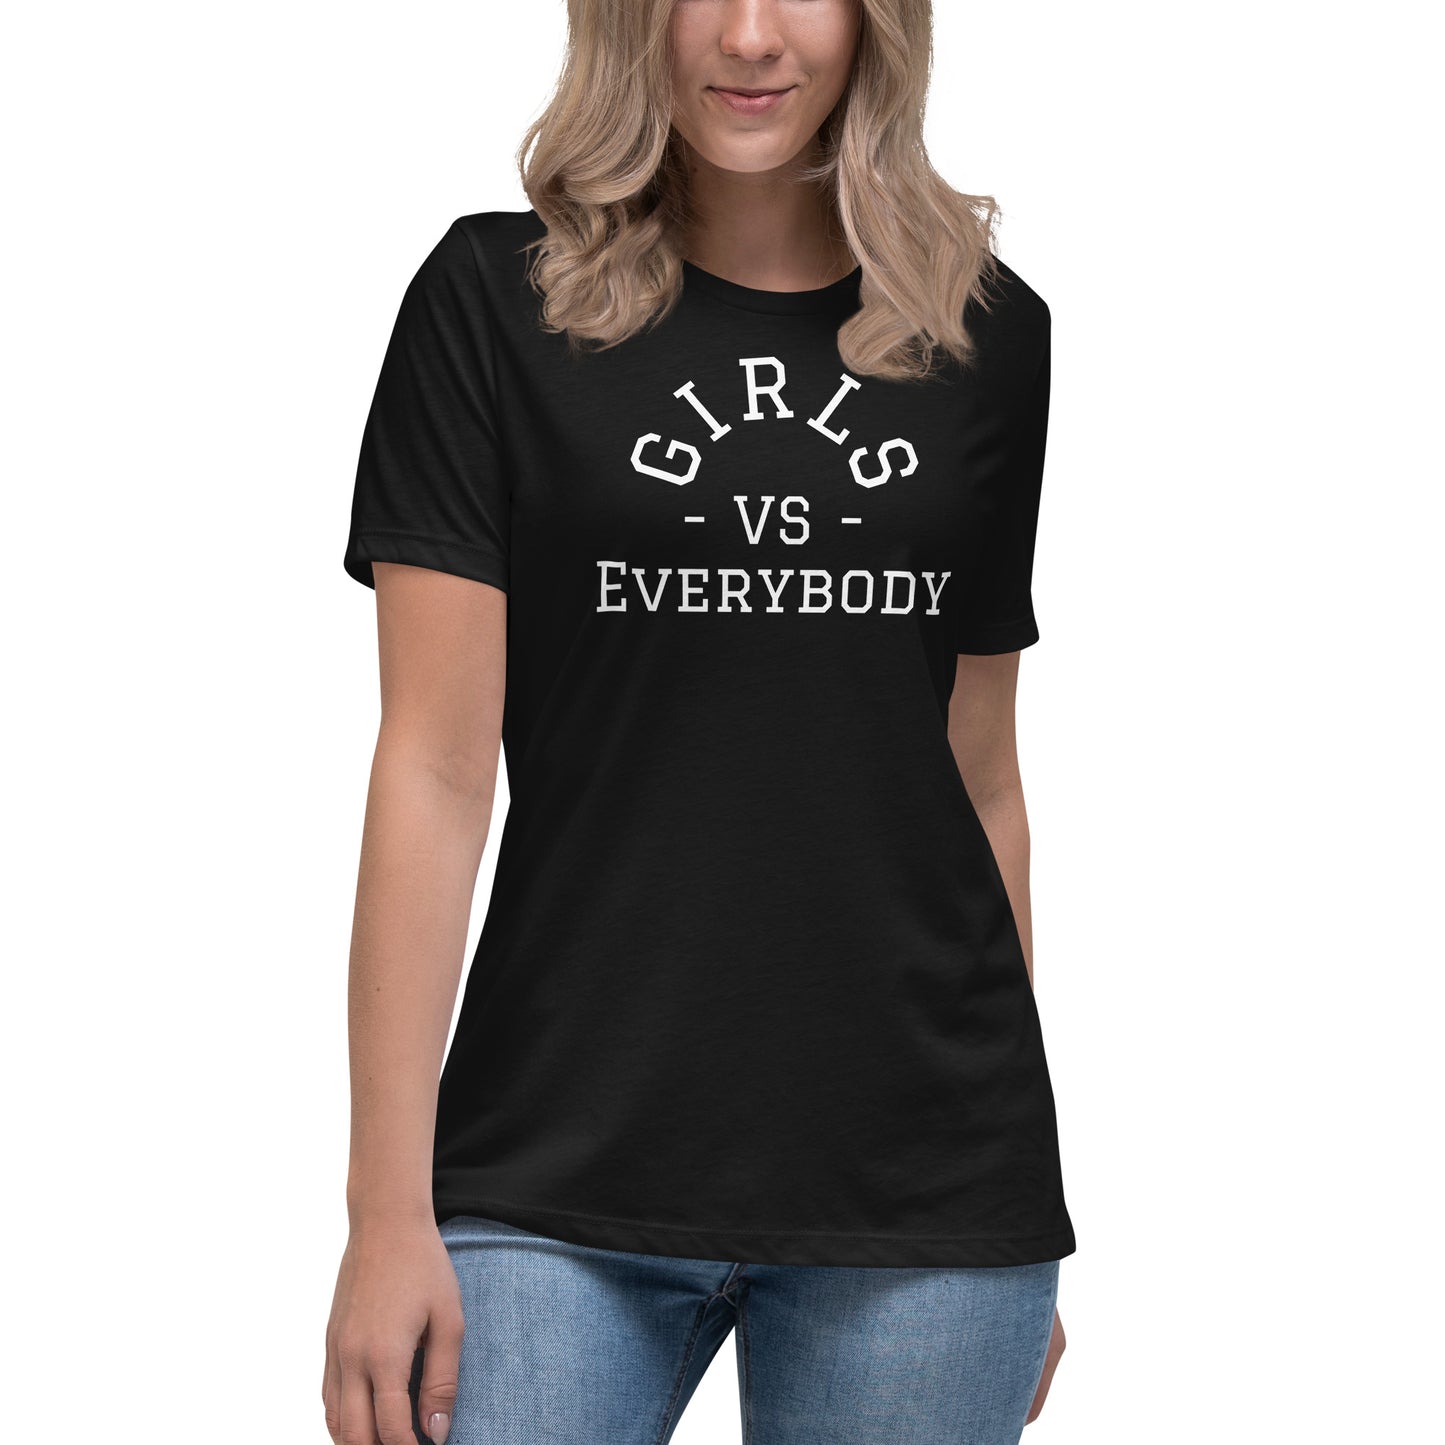 Best women's black short sleeve graphic tee shirt that says "Girls VS Everybody"